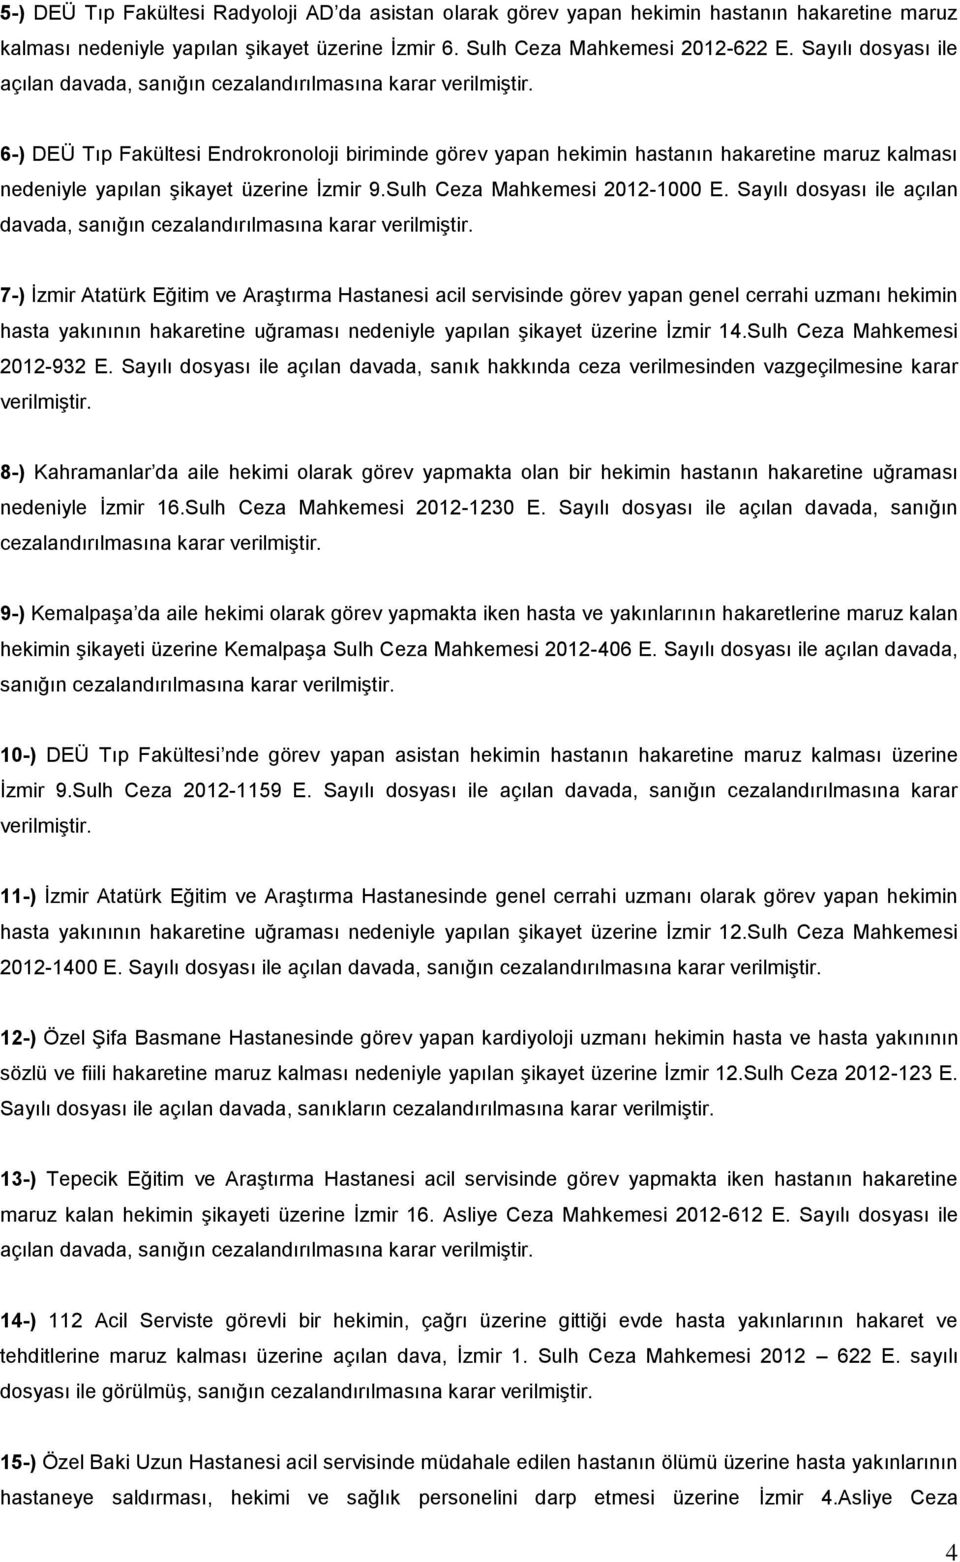 6-) DEÜ Tıp Fakültesi Endrokronoloji biriminde görev yapan hekimin hastanın hakaretine maruz kalması nedeniyle yapılan şikayet üzerine İzmir 9.Sulh Ceza Mahkemesi 2012-1000 E.